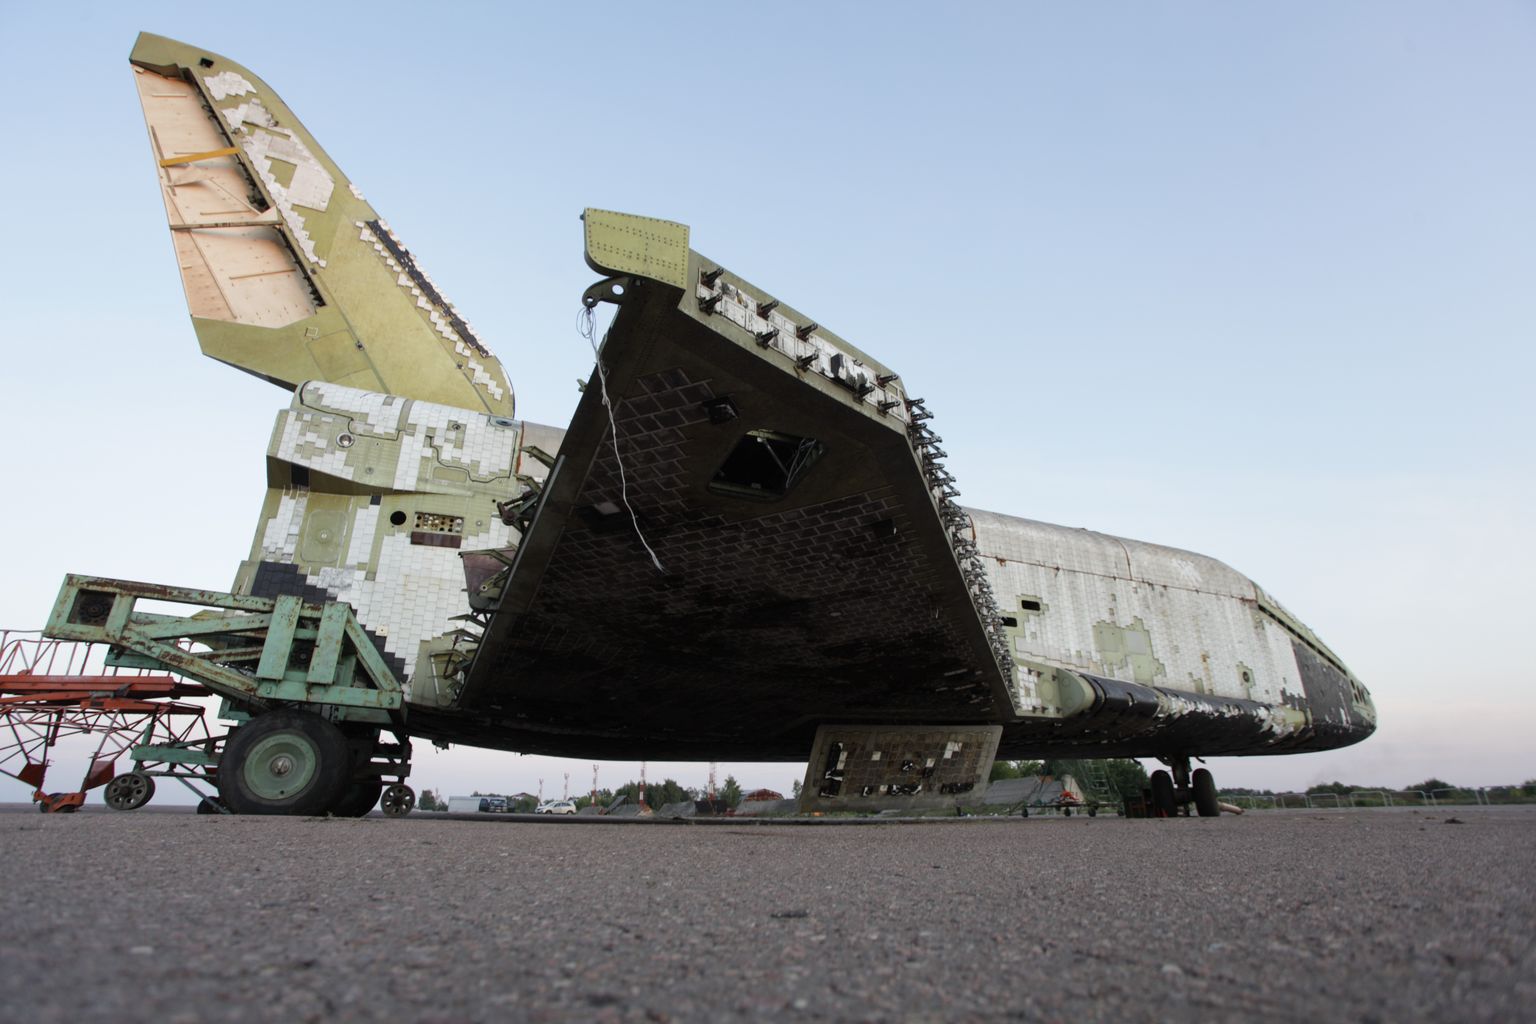 Seda, mis oli säilinud kuulsast kosmosesüstikust Buran, näidati veel seitse aastat tagasi Moskva lähistel toimunud rahvusvahelisel lennundusmessil.